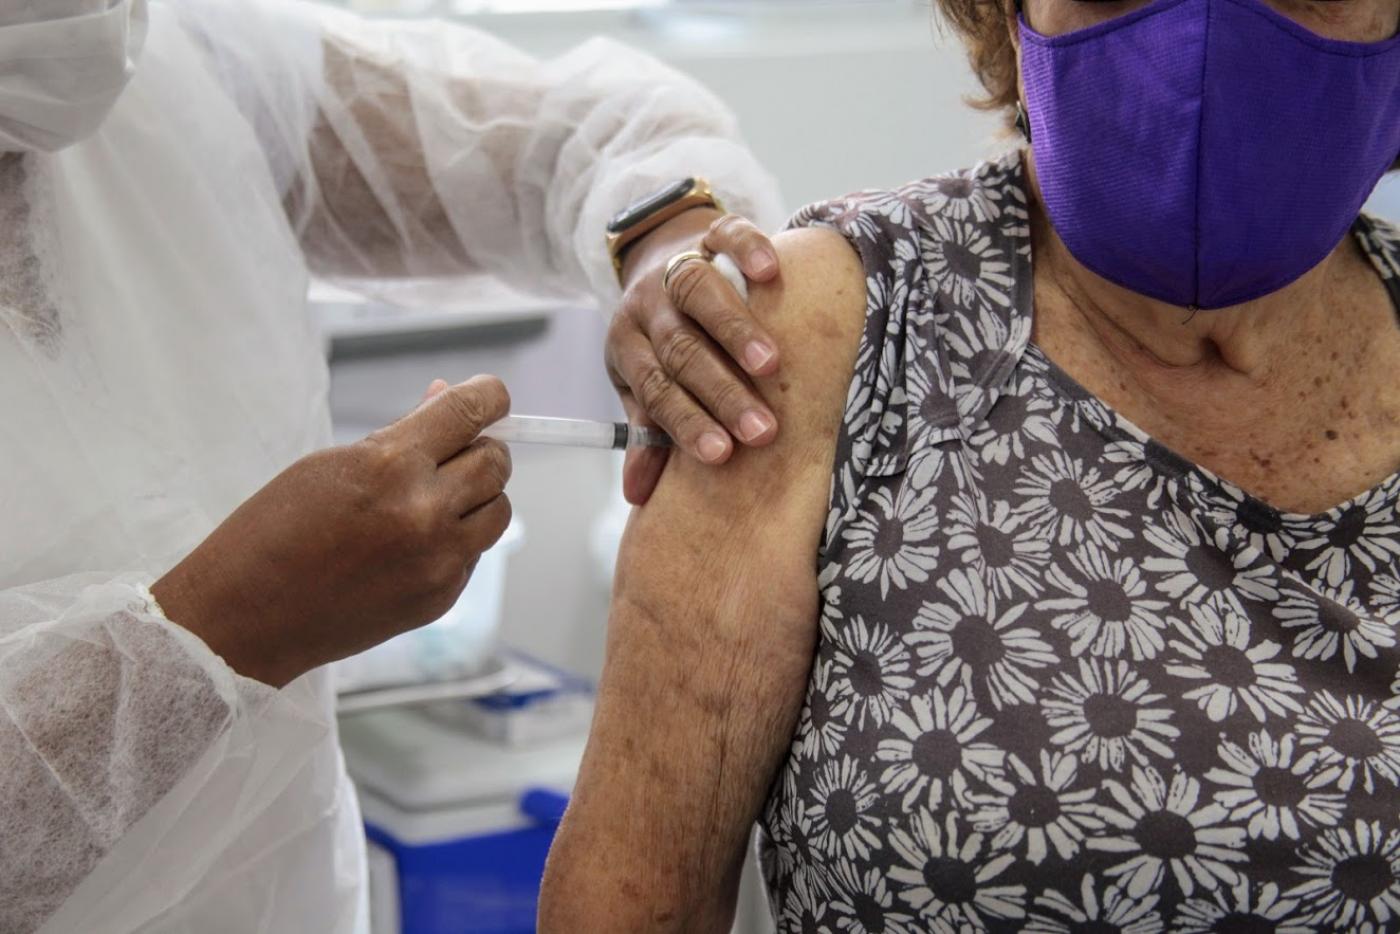 Mãos vacinam braço de mulher. Imagem em close. #Paratodosverem